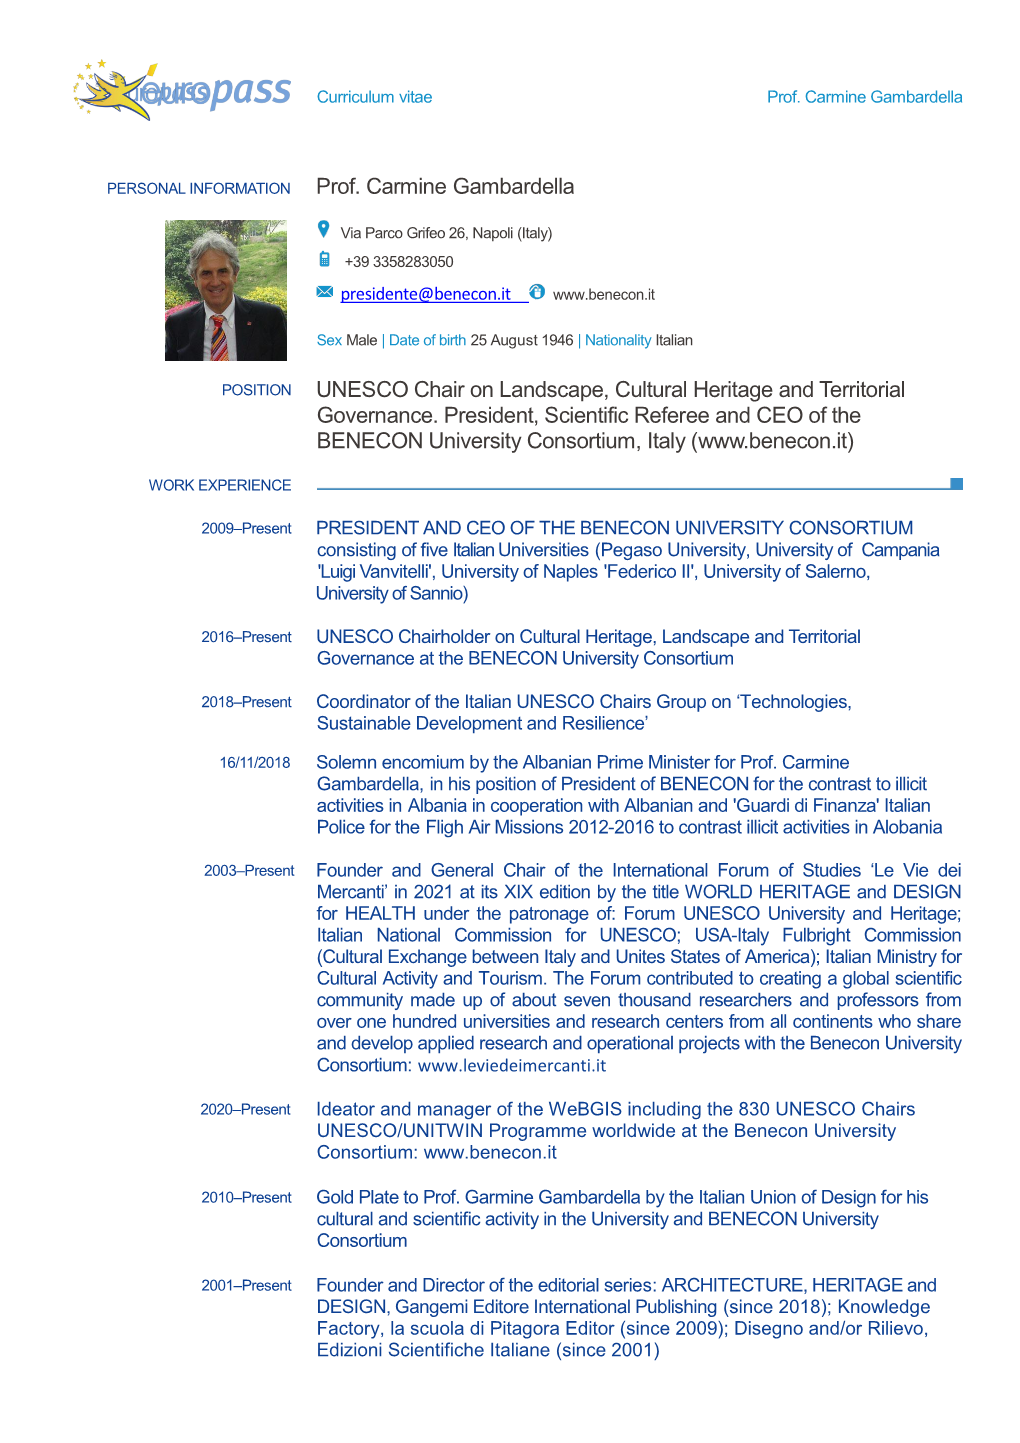 Prof. Carmine Gambardella UNESCO Chair on Landscape, Cultural